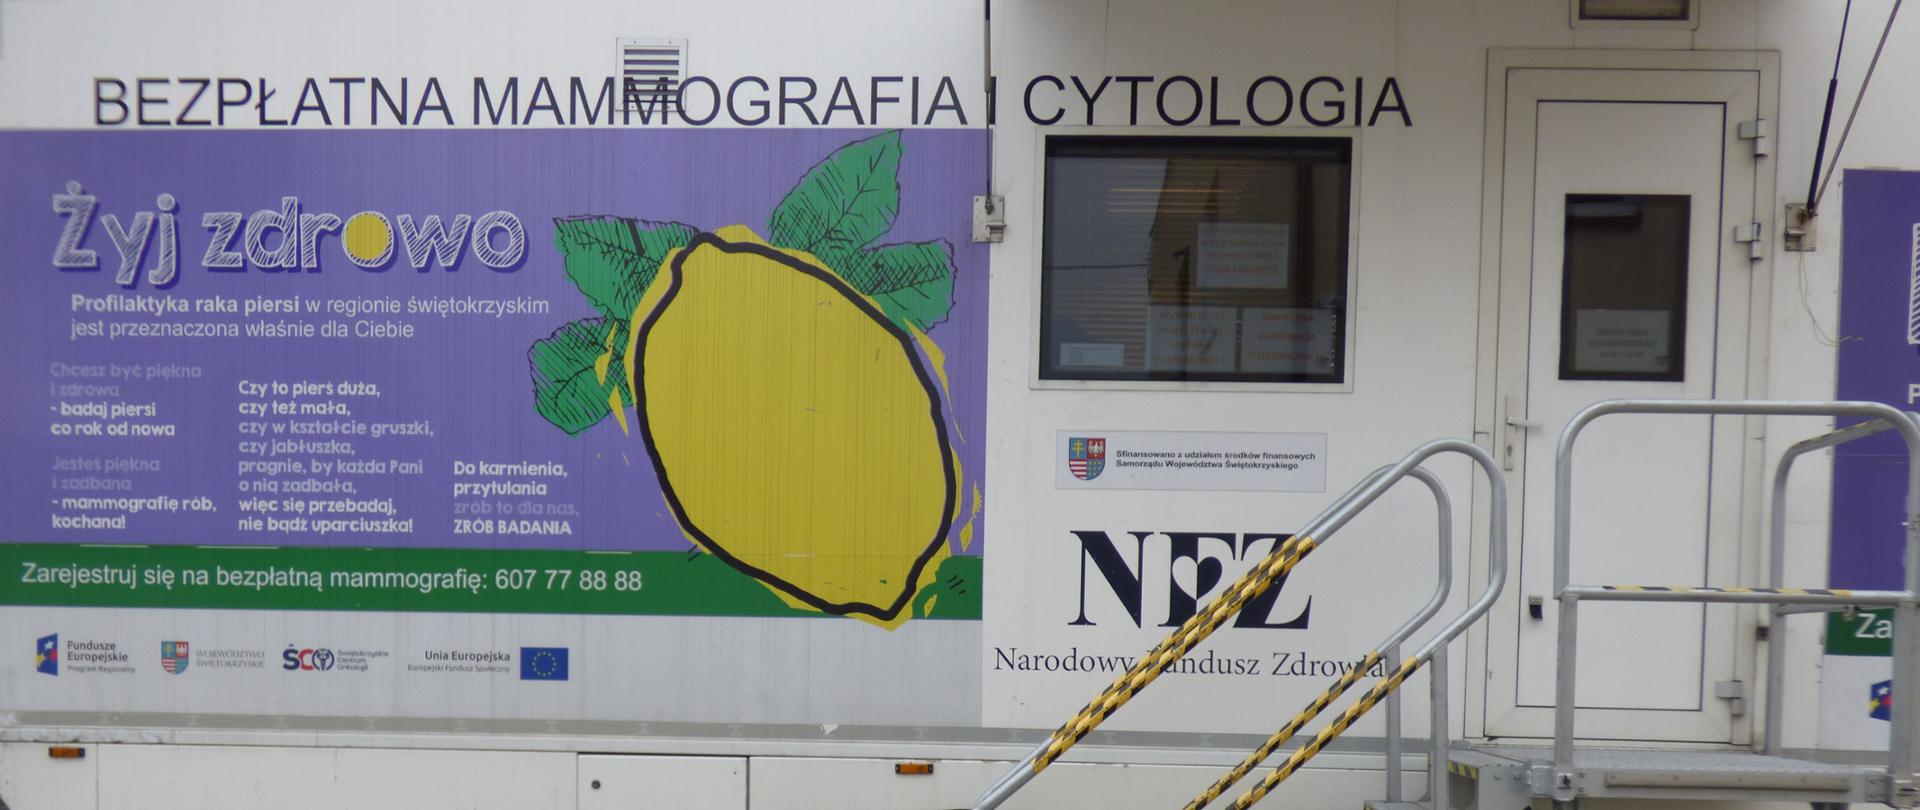 Fotografia przedstawia wizerunek nowoczesnego cytomammobusa Świętokrzyskiego Centrum Onkologii zlokalizowanego na parkingu przed budynkiem Urzędu Gminy, w którym odbywały się bezpłatne badania mammograficzne i cytologiczne dla mieszkanek gminy Ruda Maleniecka.